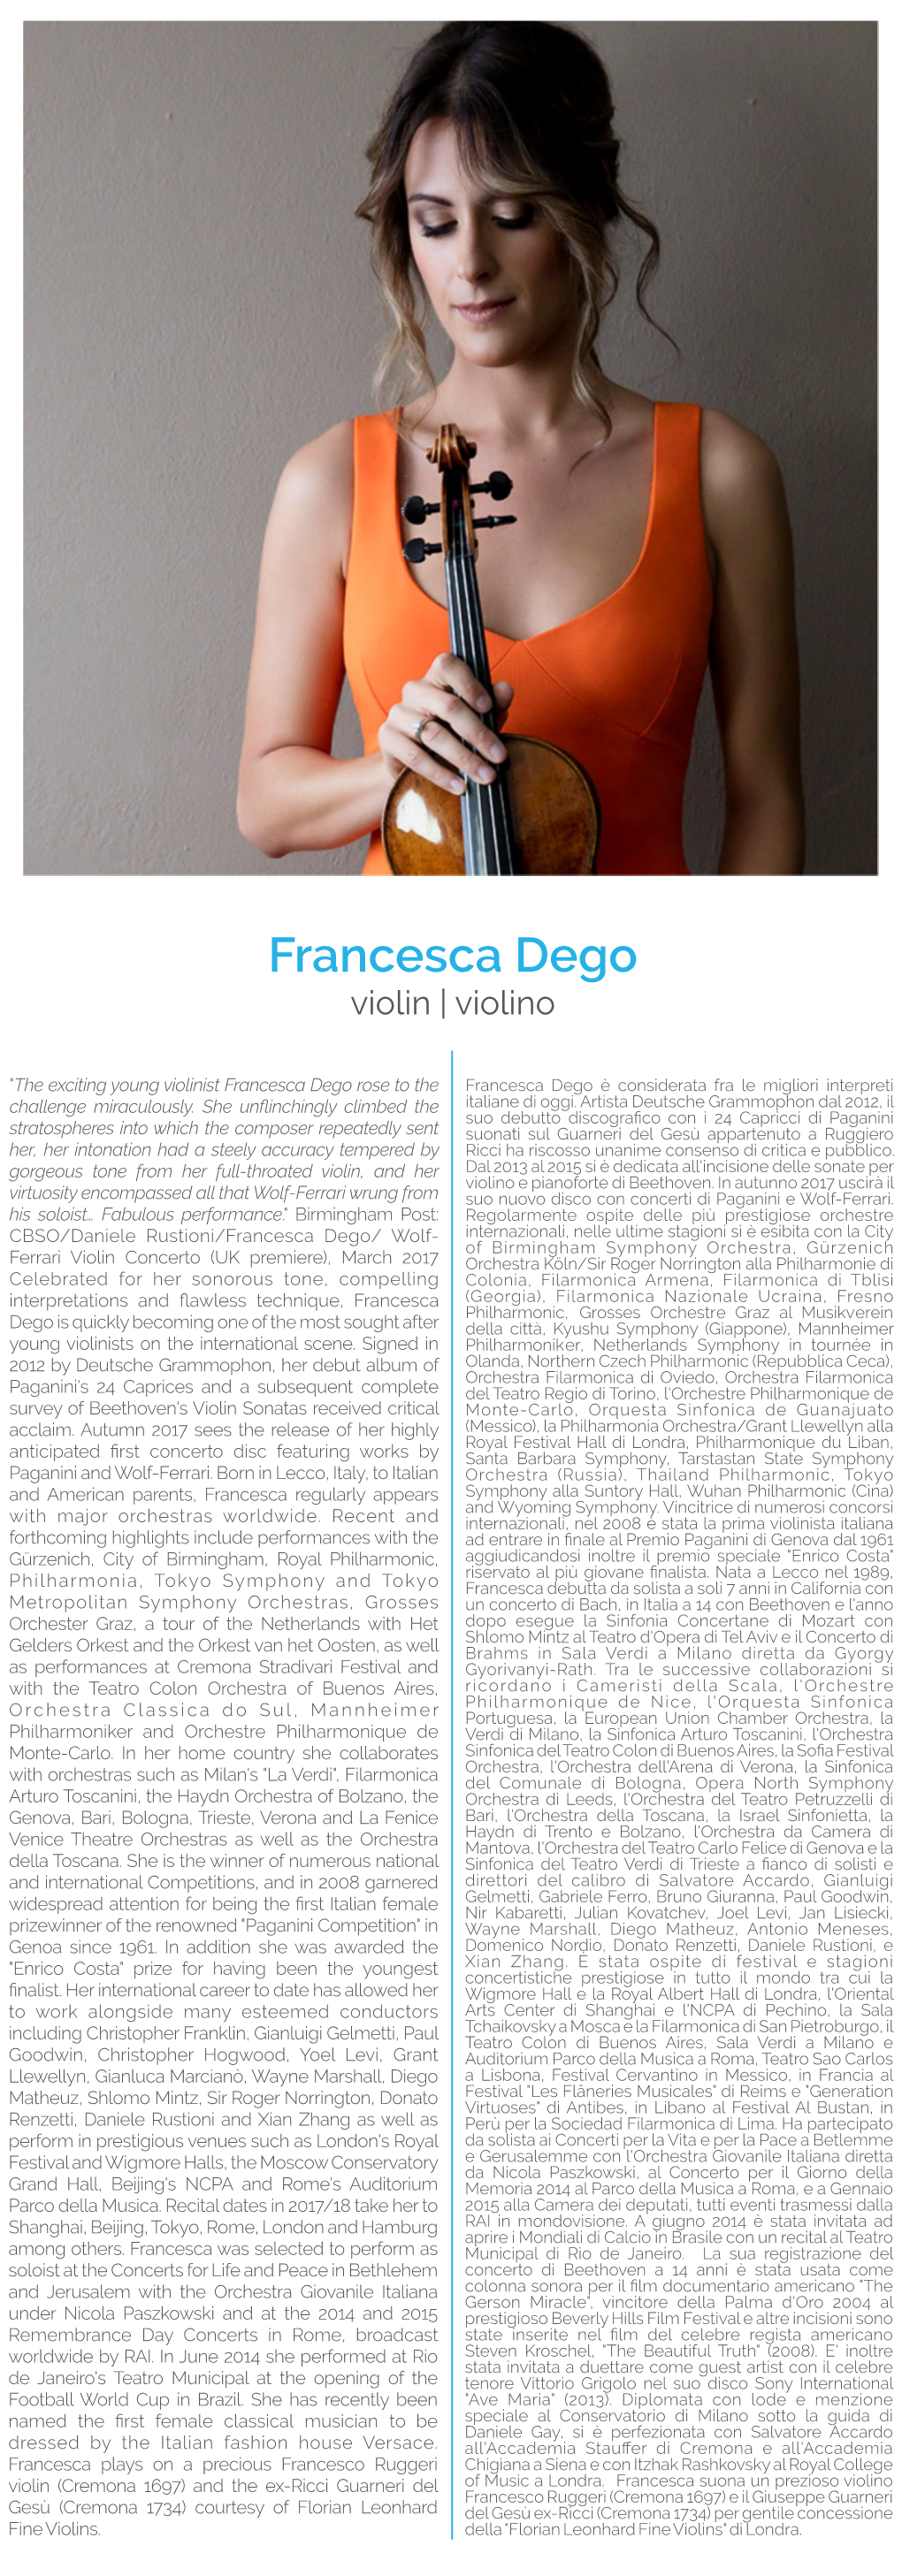 Francesca Dego Violin | Violino